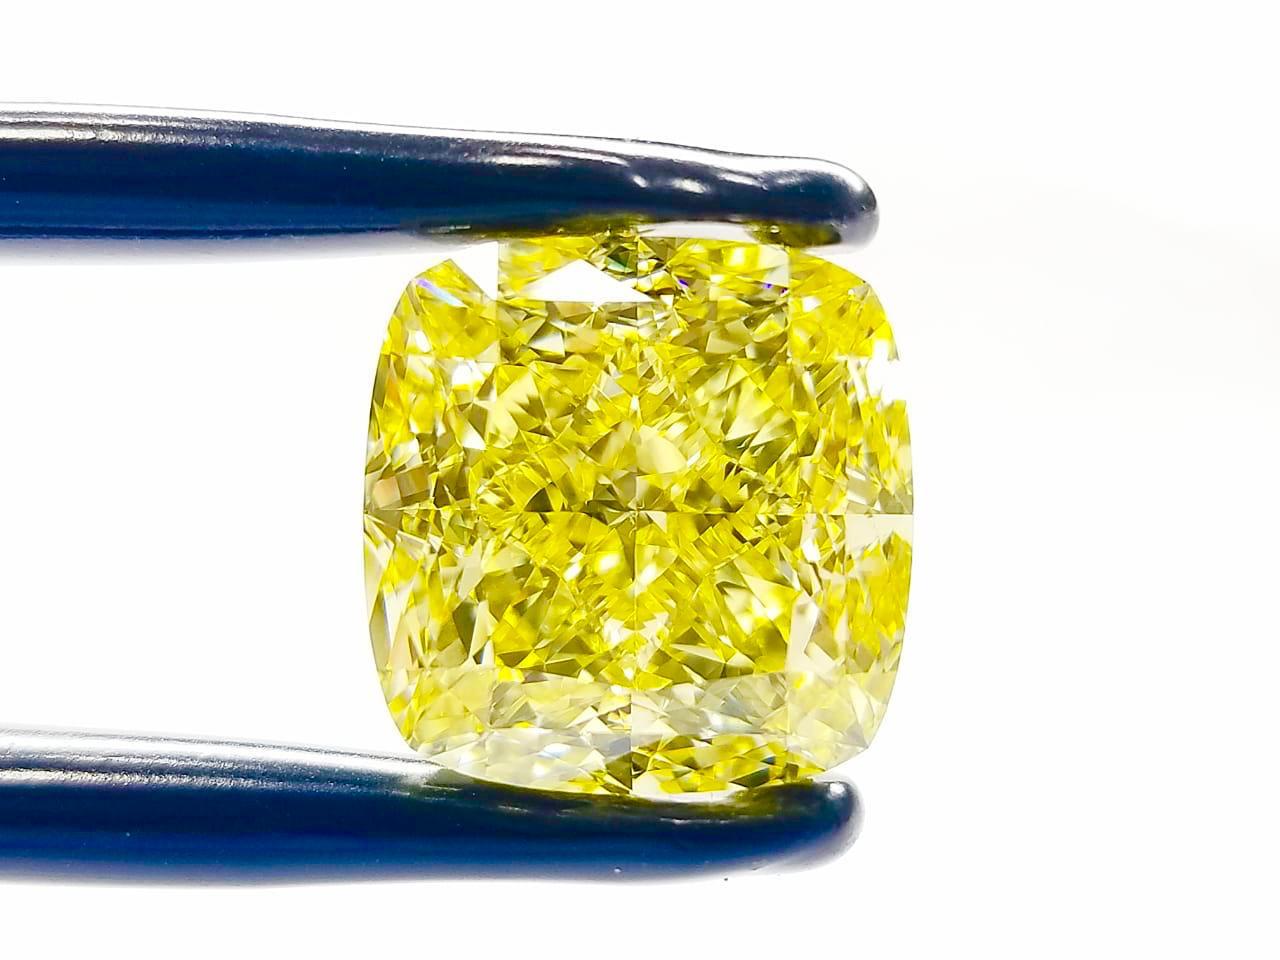 De la chambre forte du musée de la bijouterie Emilio, voici un magnifique diamant de 16,00 carats de qualité investissement, de couleur naturelle jaune intense fantaisie.
Nous sommes experts en création de joyaux pour ces pièces de collection très